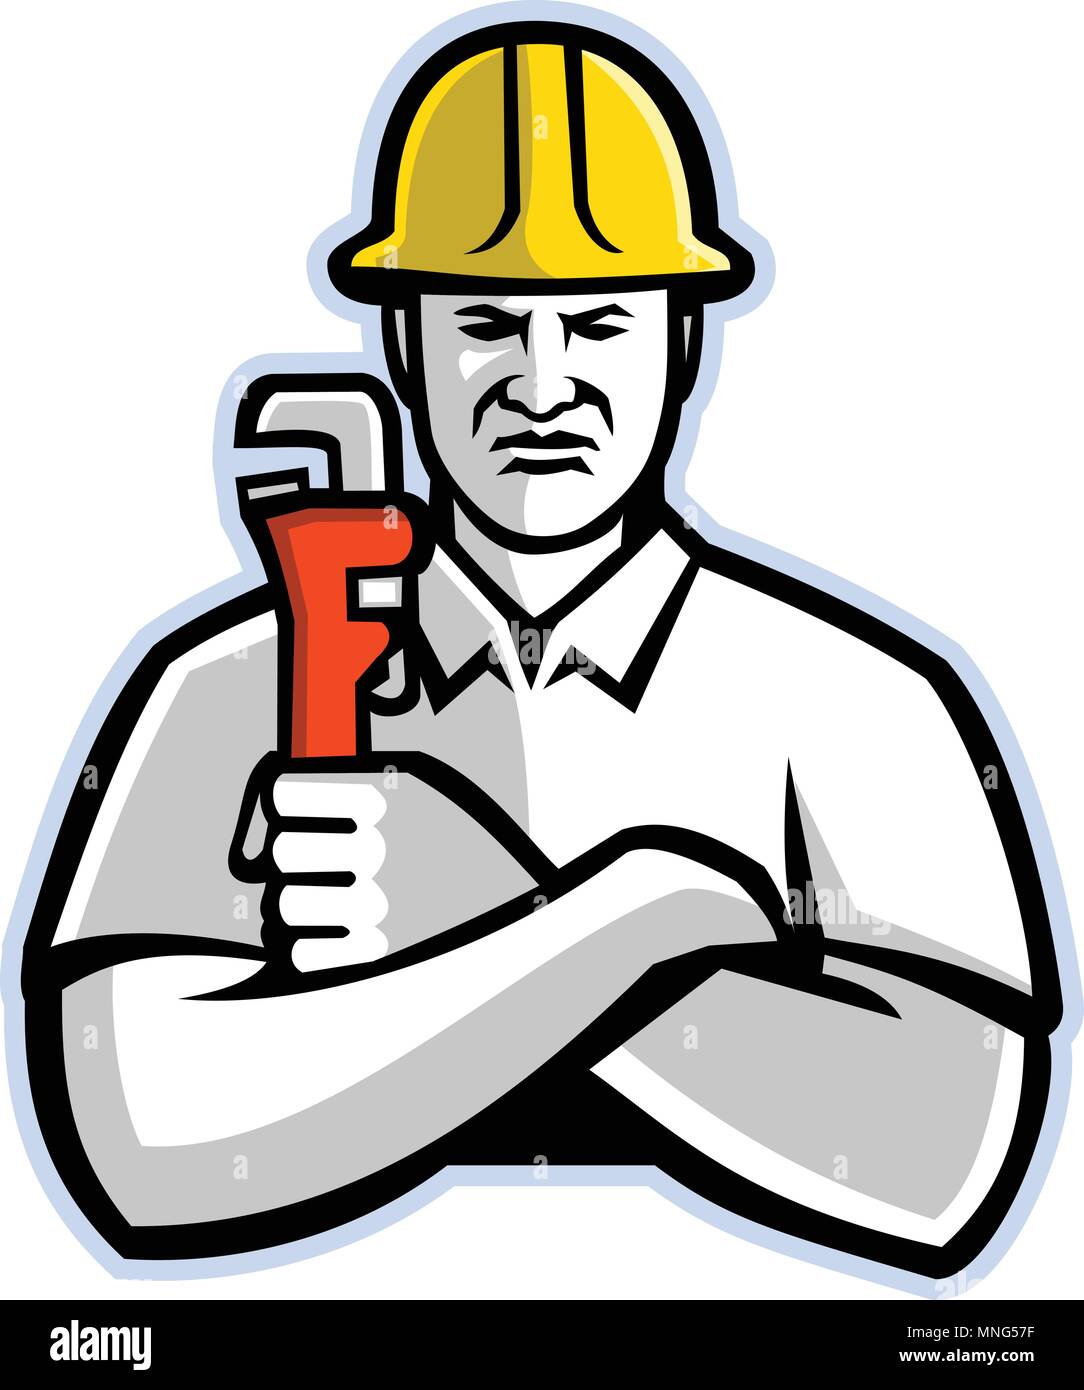 Maskottchen Symbol Abbildung eines pipefitter, ein tradesperson herzustellen, die für die Installation, Wartung und Reparatur der mechanischen Piping Systems, eine Rohrzange Stock Vektor